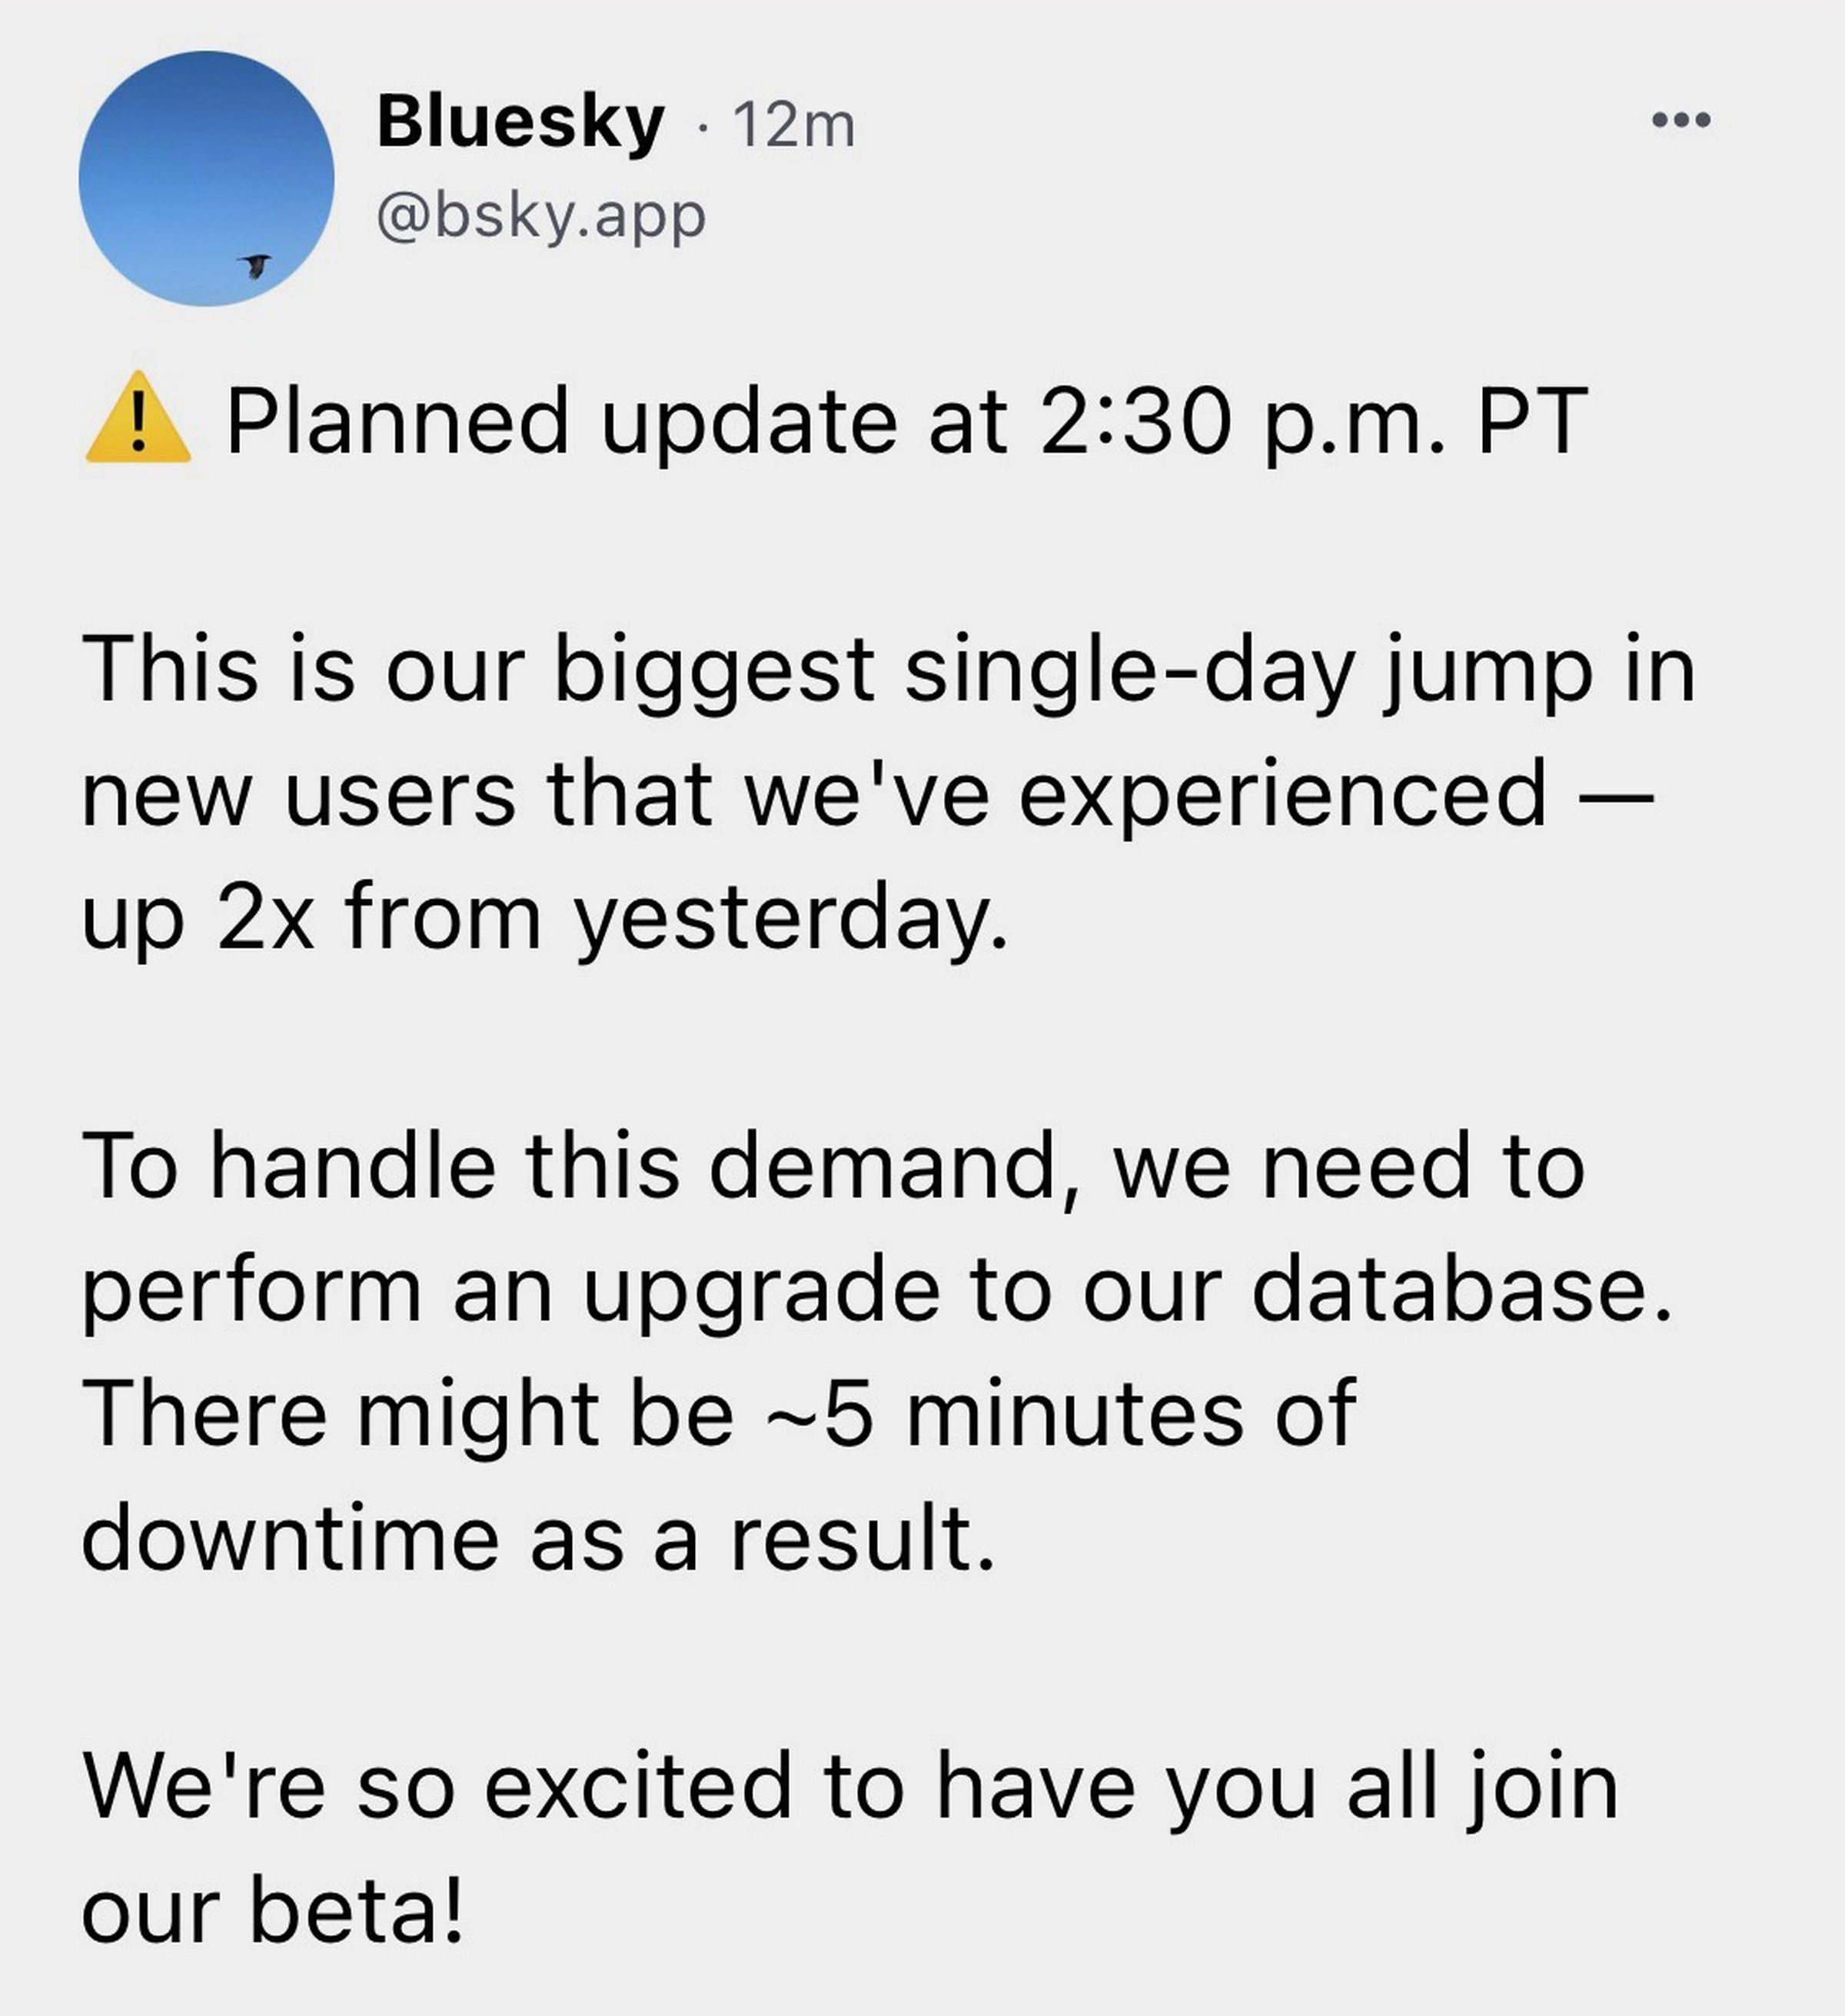 A screenshot from Bluesky describing a planned update.